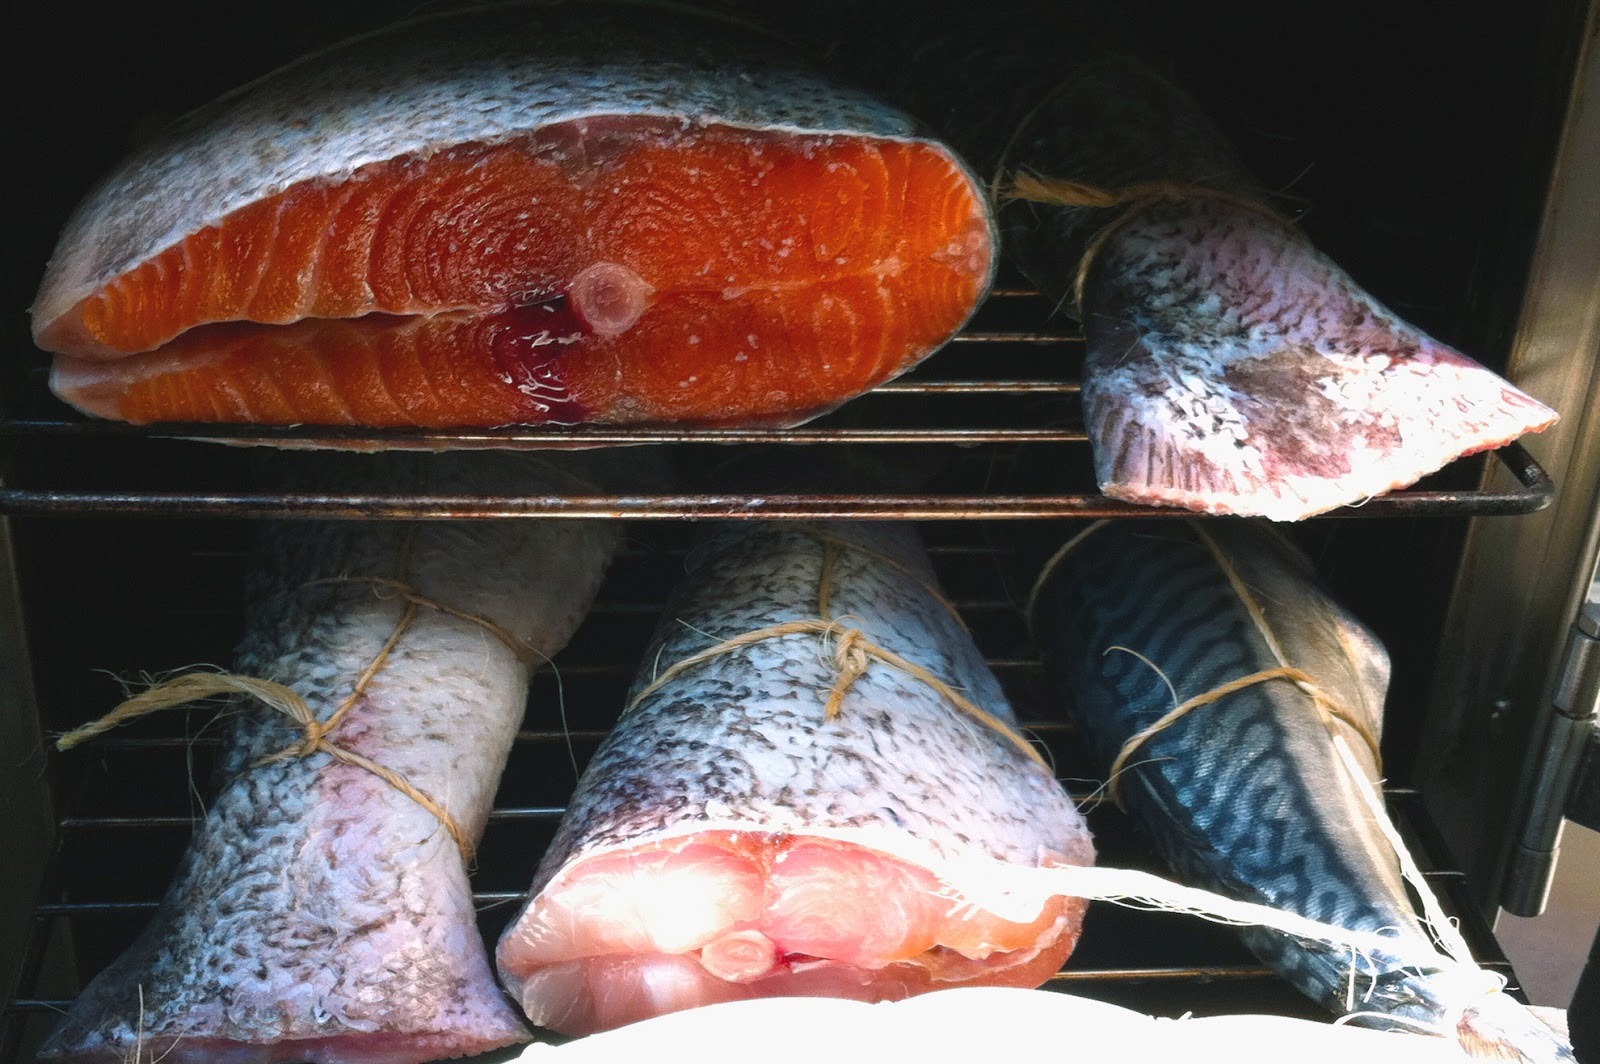 Шея копченая. Презентация копченой рыбы. Холодильник для охлаждения рыбы после копчения. Аллергия на копченую рыбу.